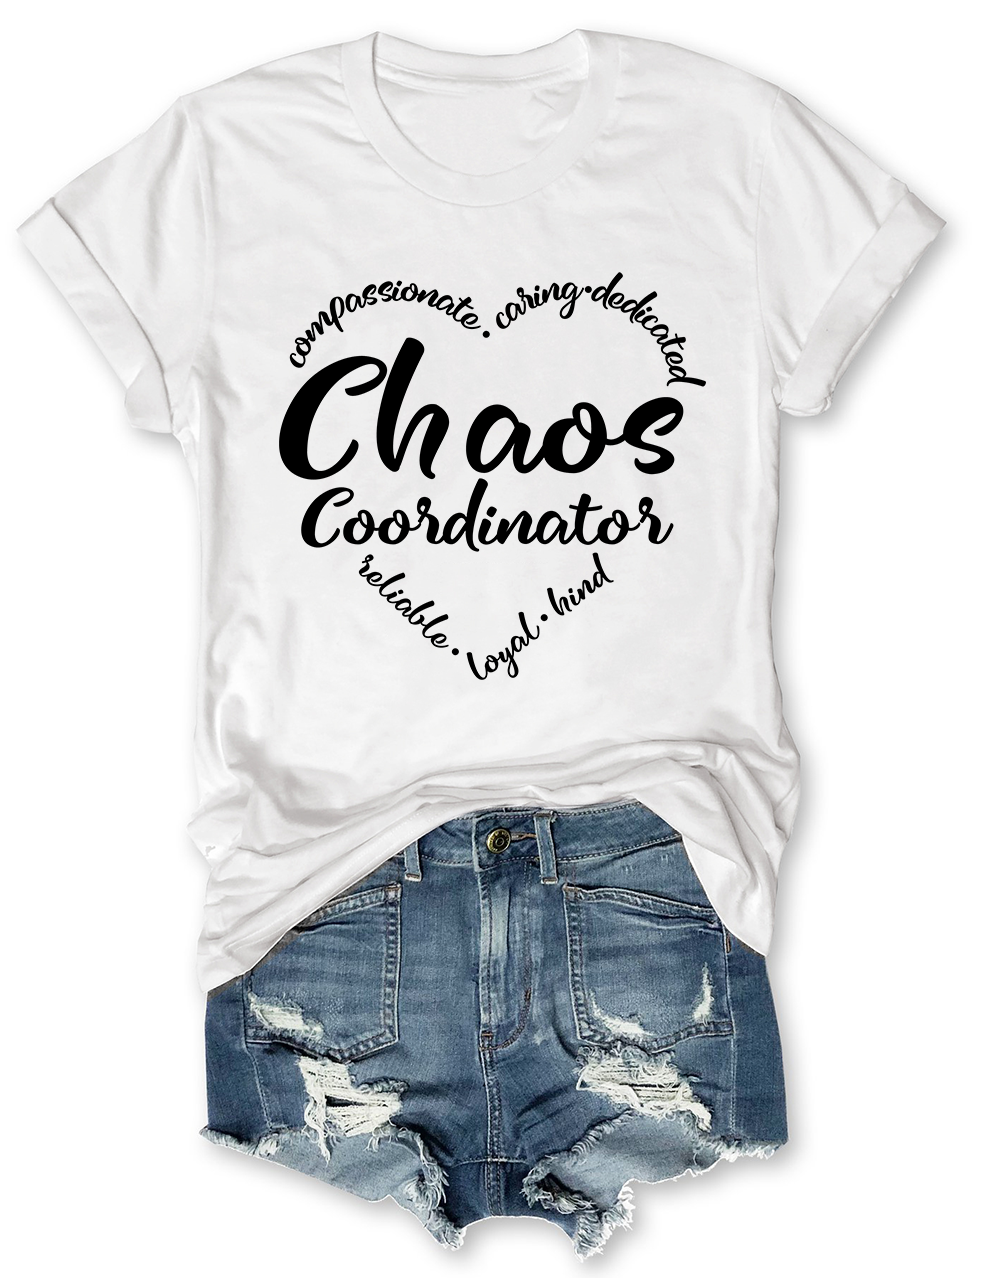 Chaos Coordinator T-Shirt